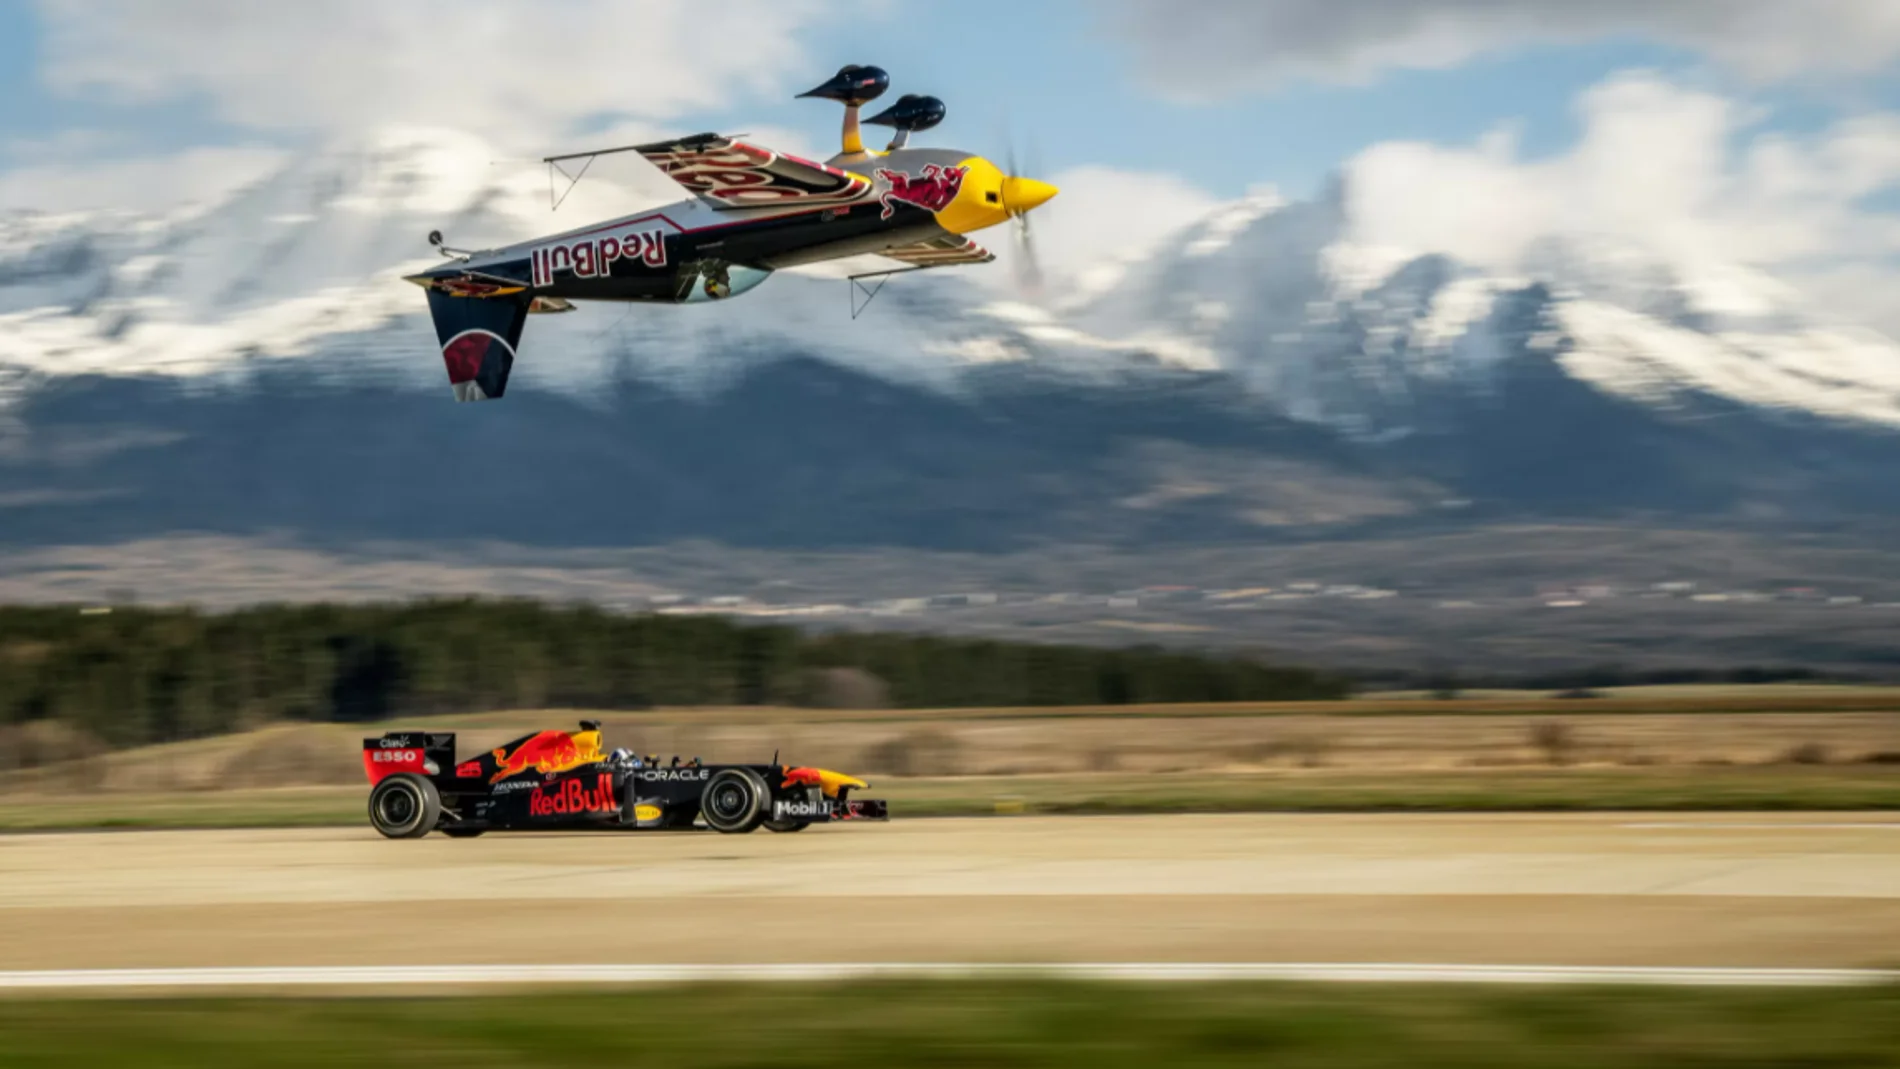 La increíble carrera entre un F1 y un avión invertido que protagonizan Coulthard y Martin Sonka